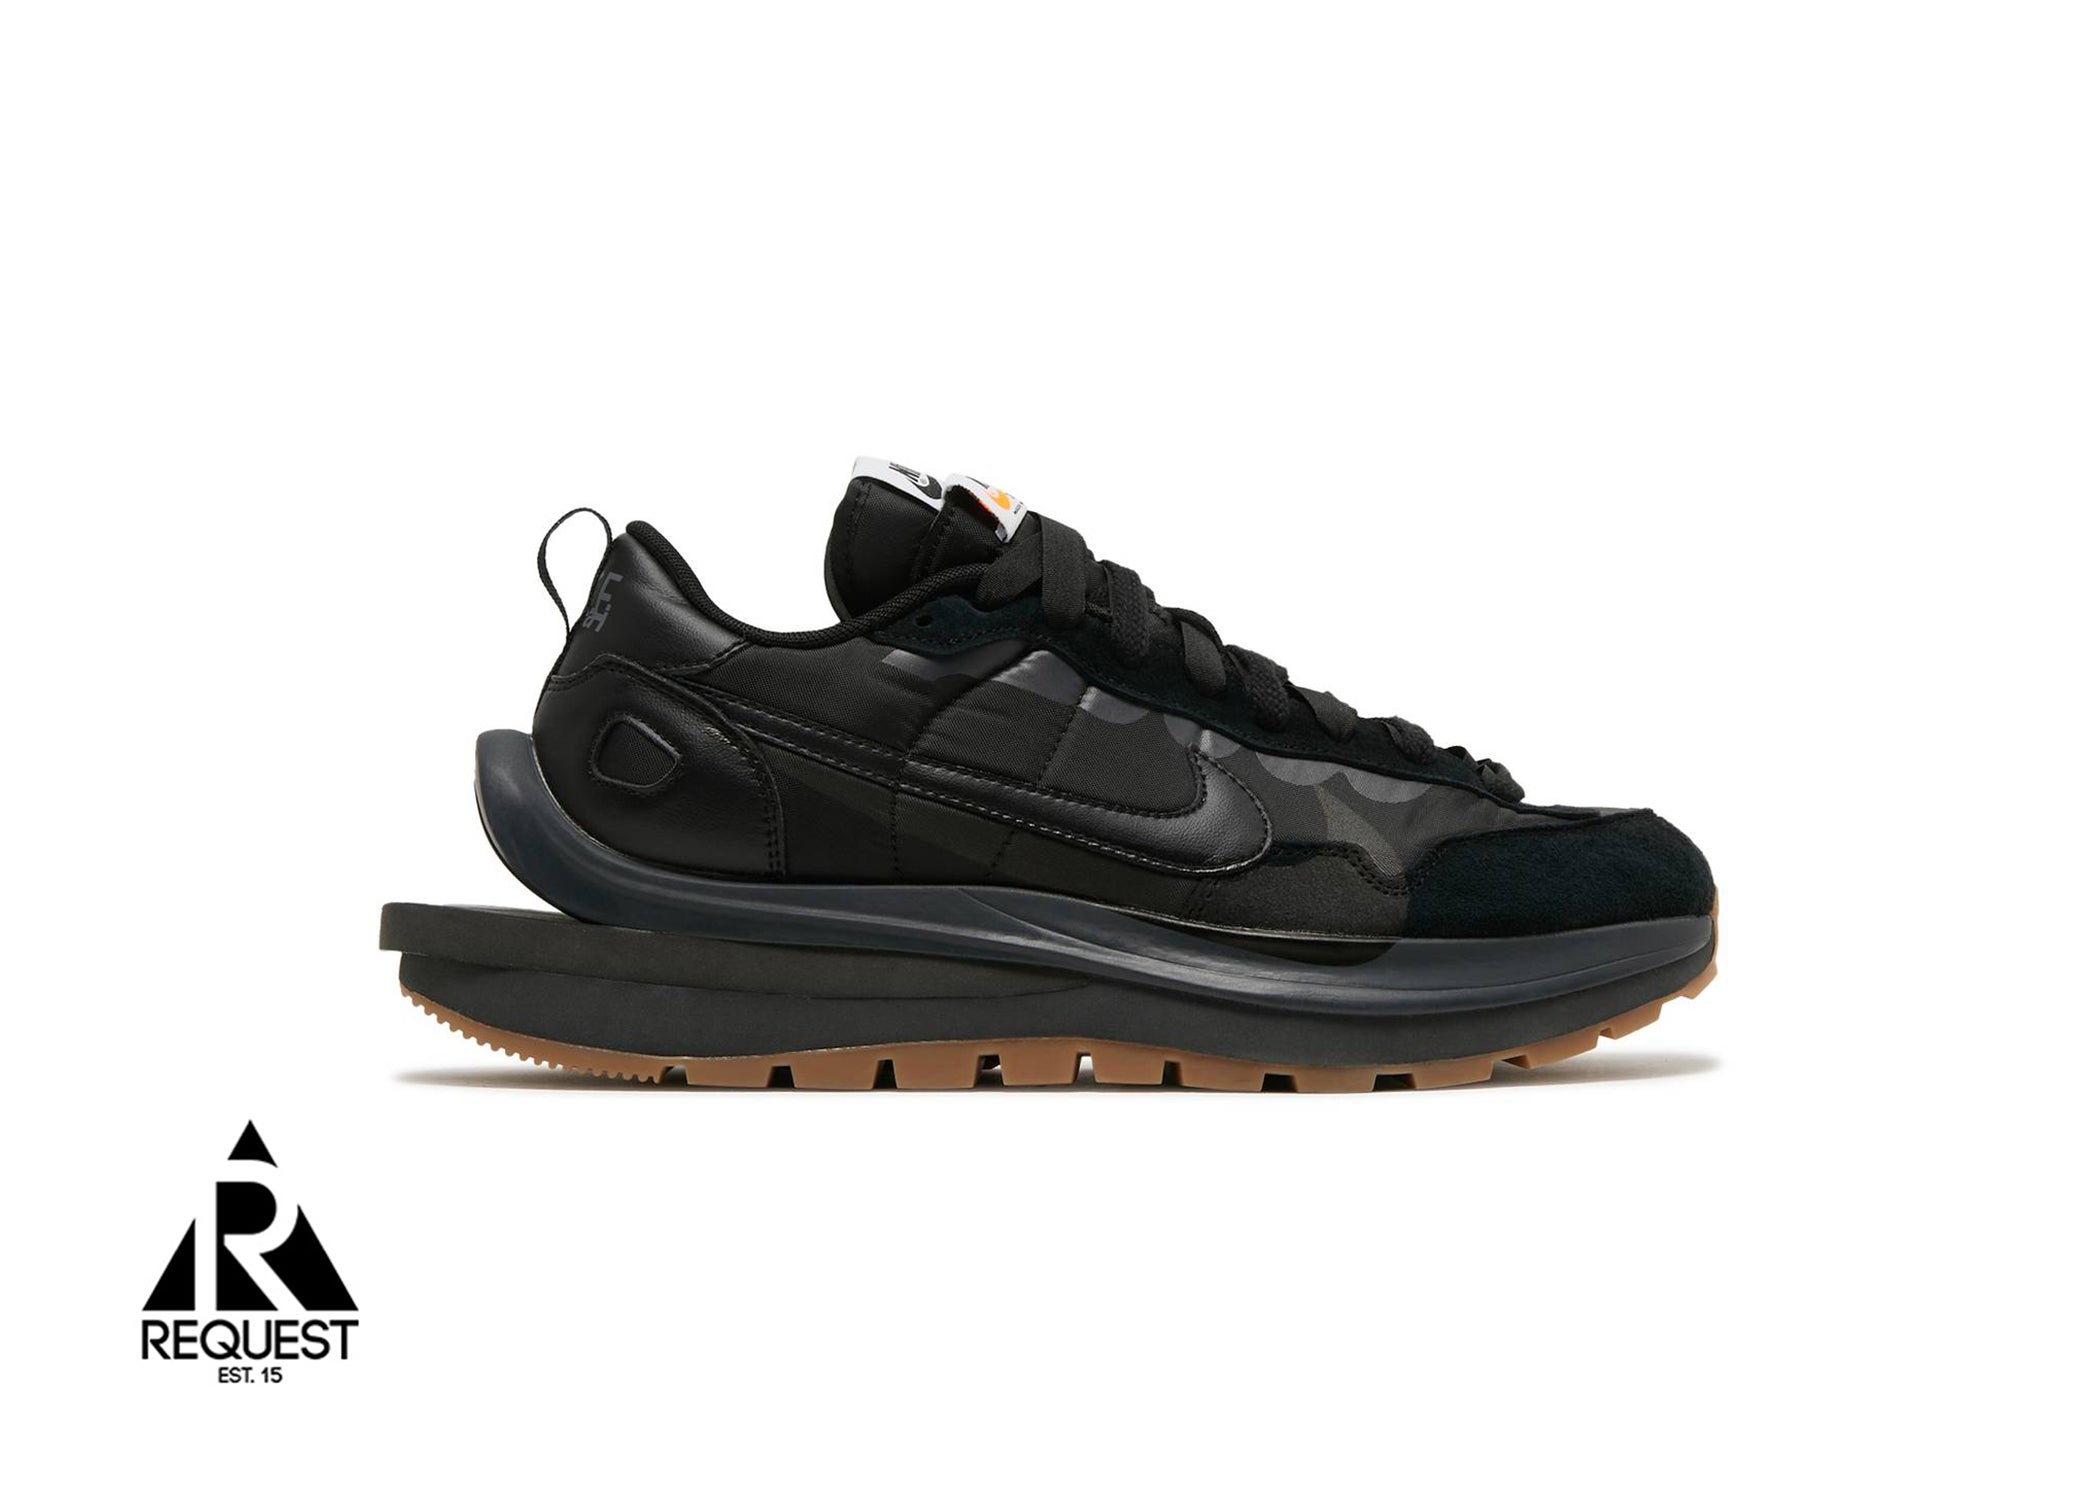 Nike Sacai Vaporwaffle “Black Gum”